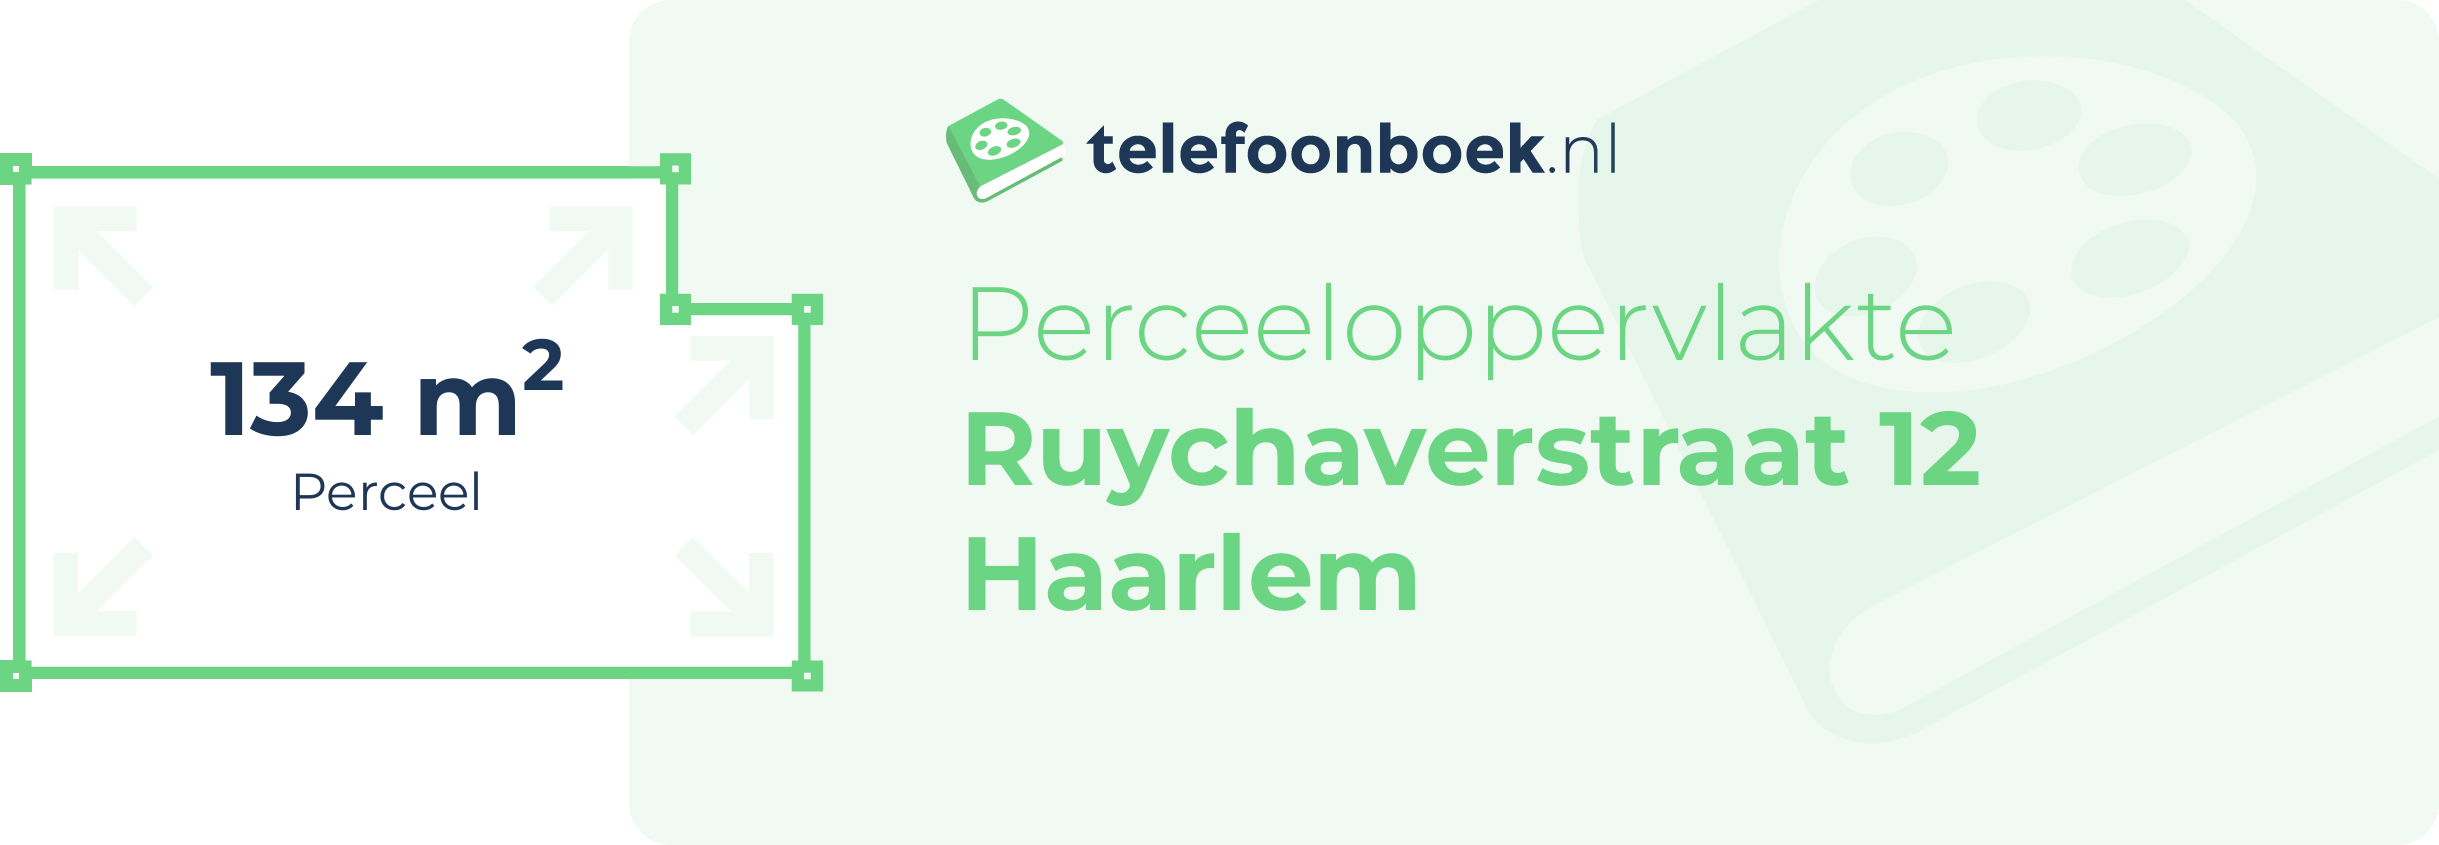 Perceeloppervlakte Ruychaverstraat 12 Haarlem